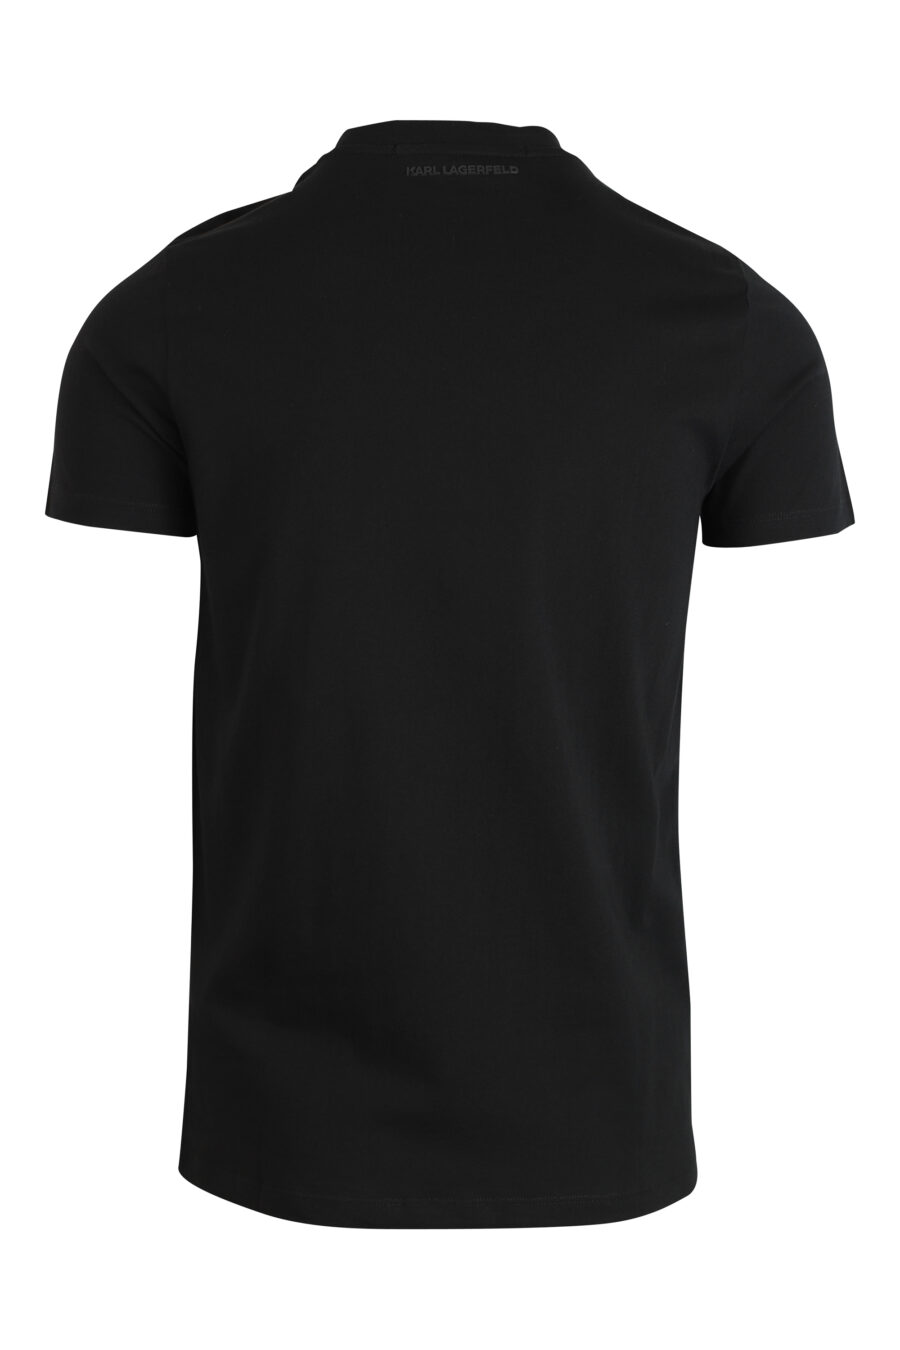 Camiseta negra con logo monocromático "rue st guillaume" - 4062226289306 2